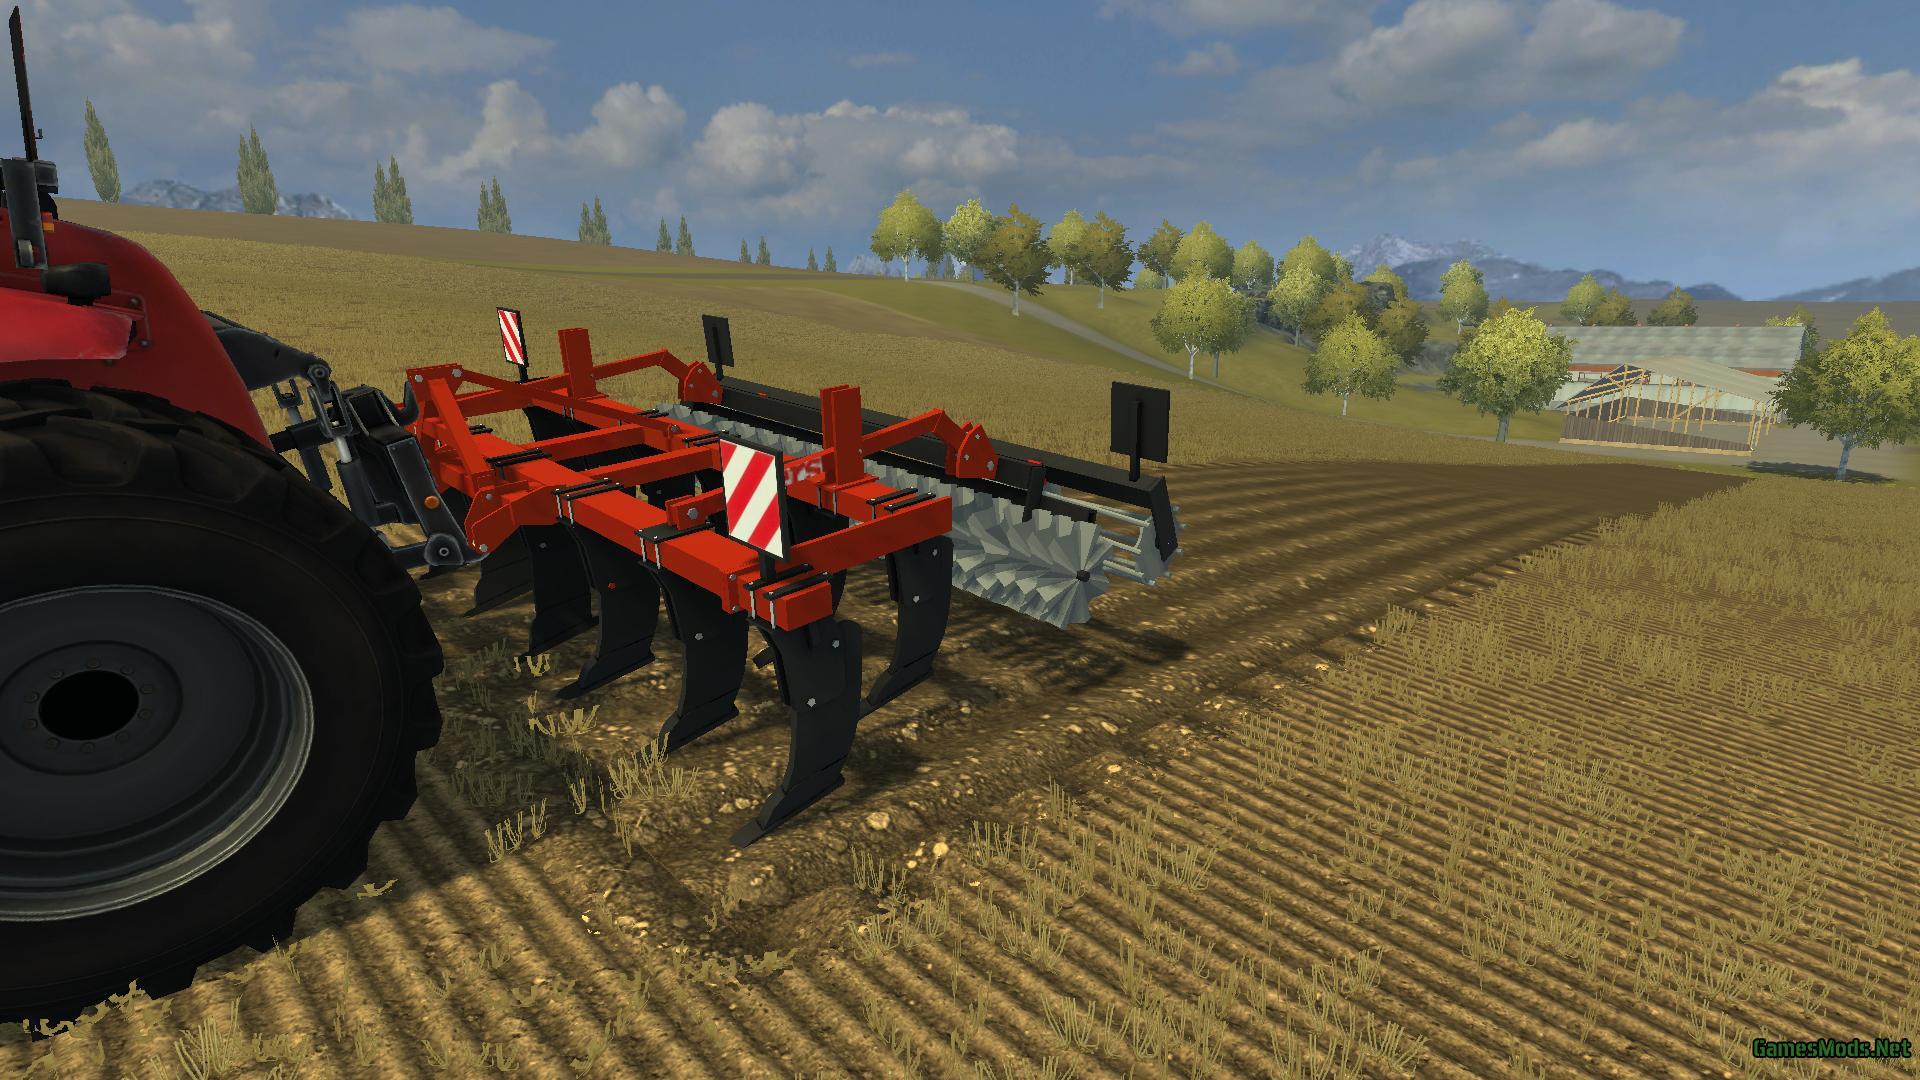 fraese v1 0 farming simulator 2013 implements tools cultivators fs 13 